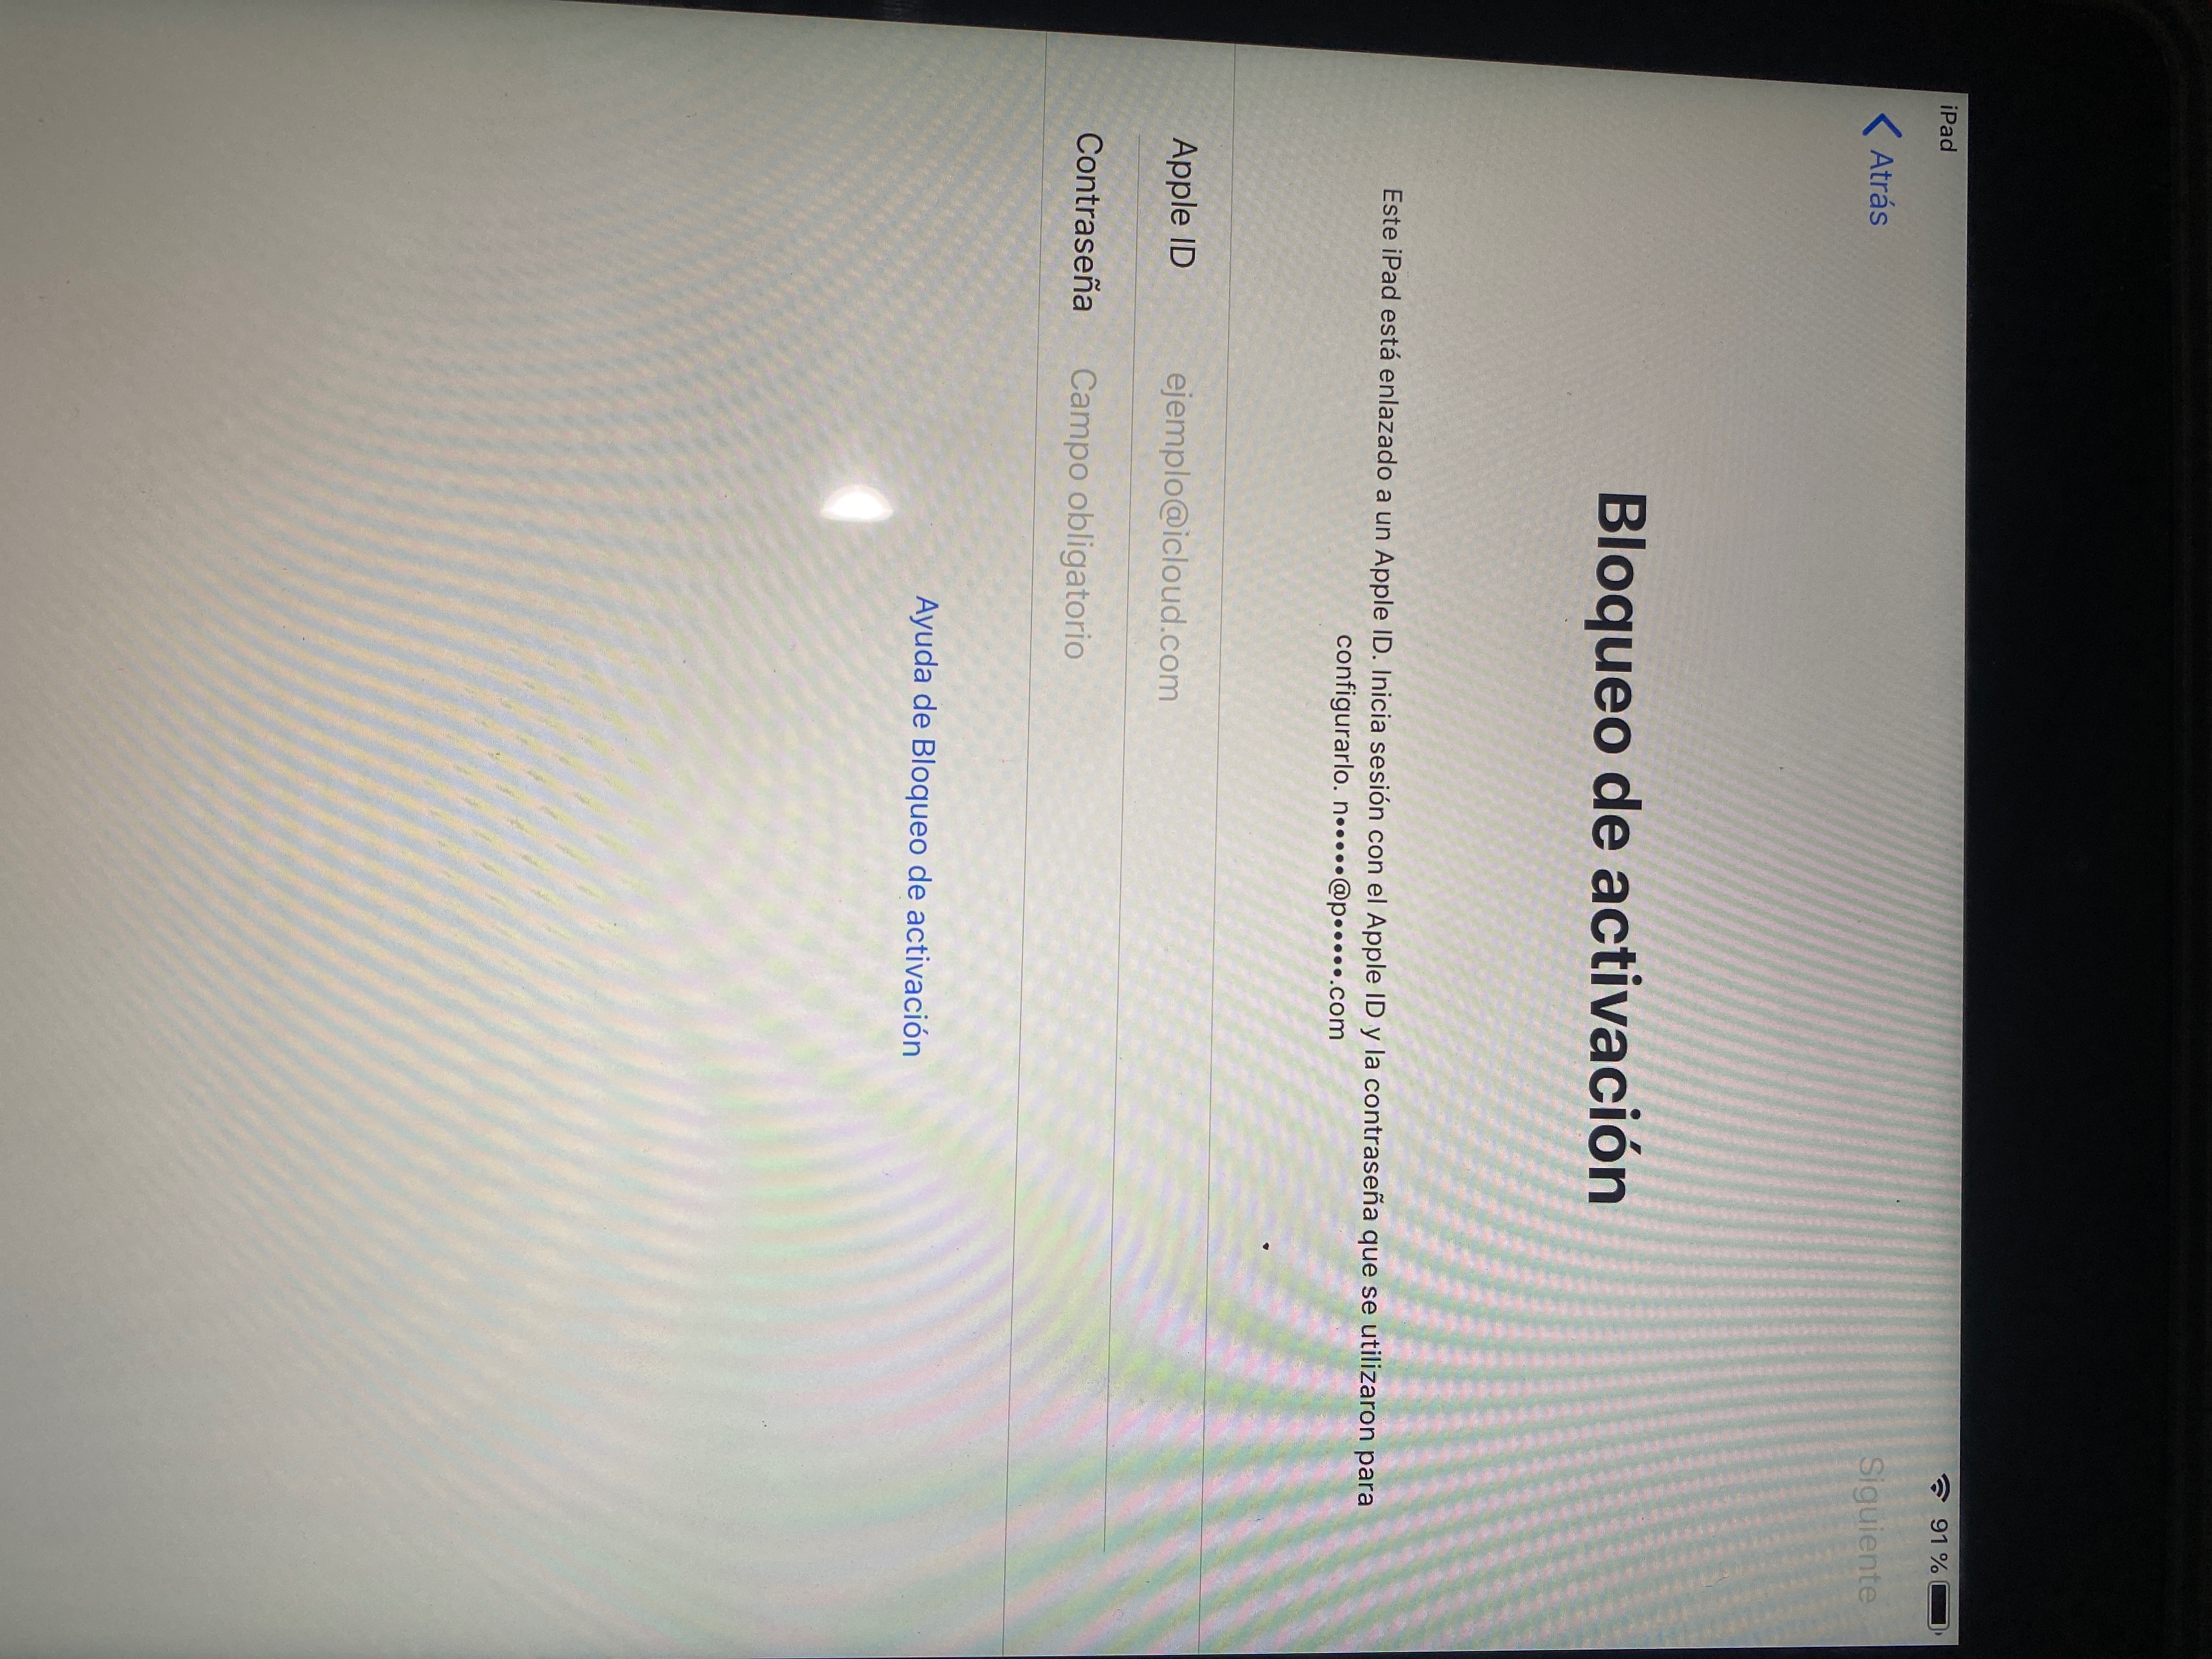 Compre un iPad de segunda mano y me sale … - Apple Community